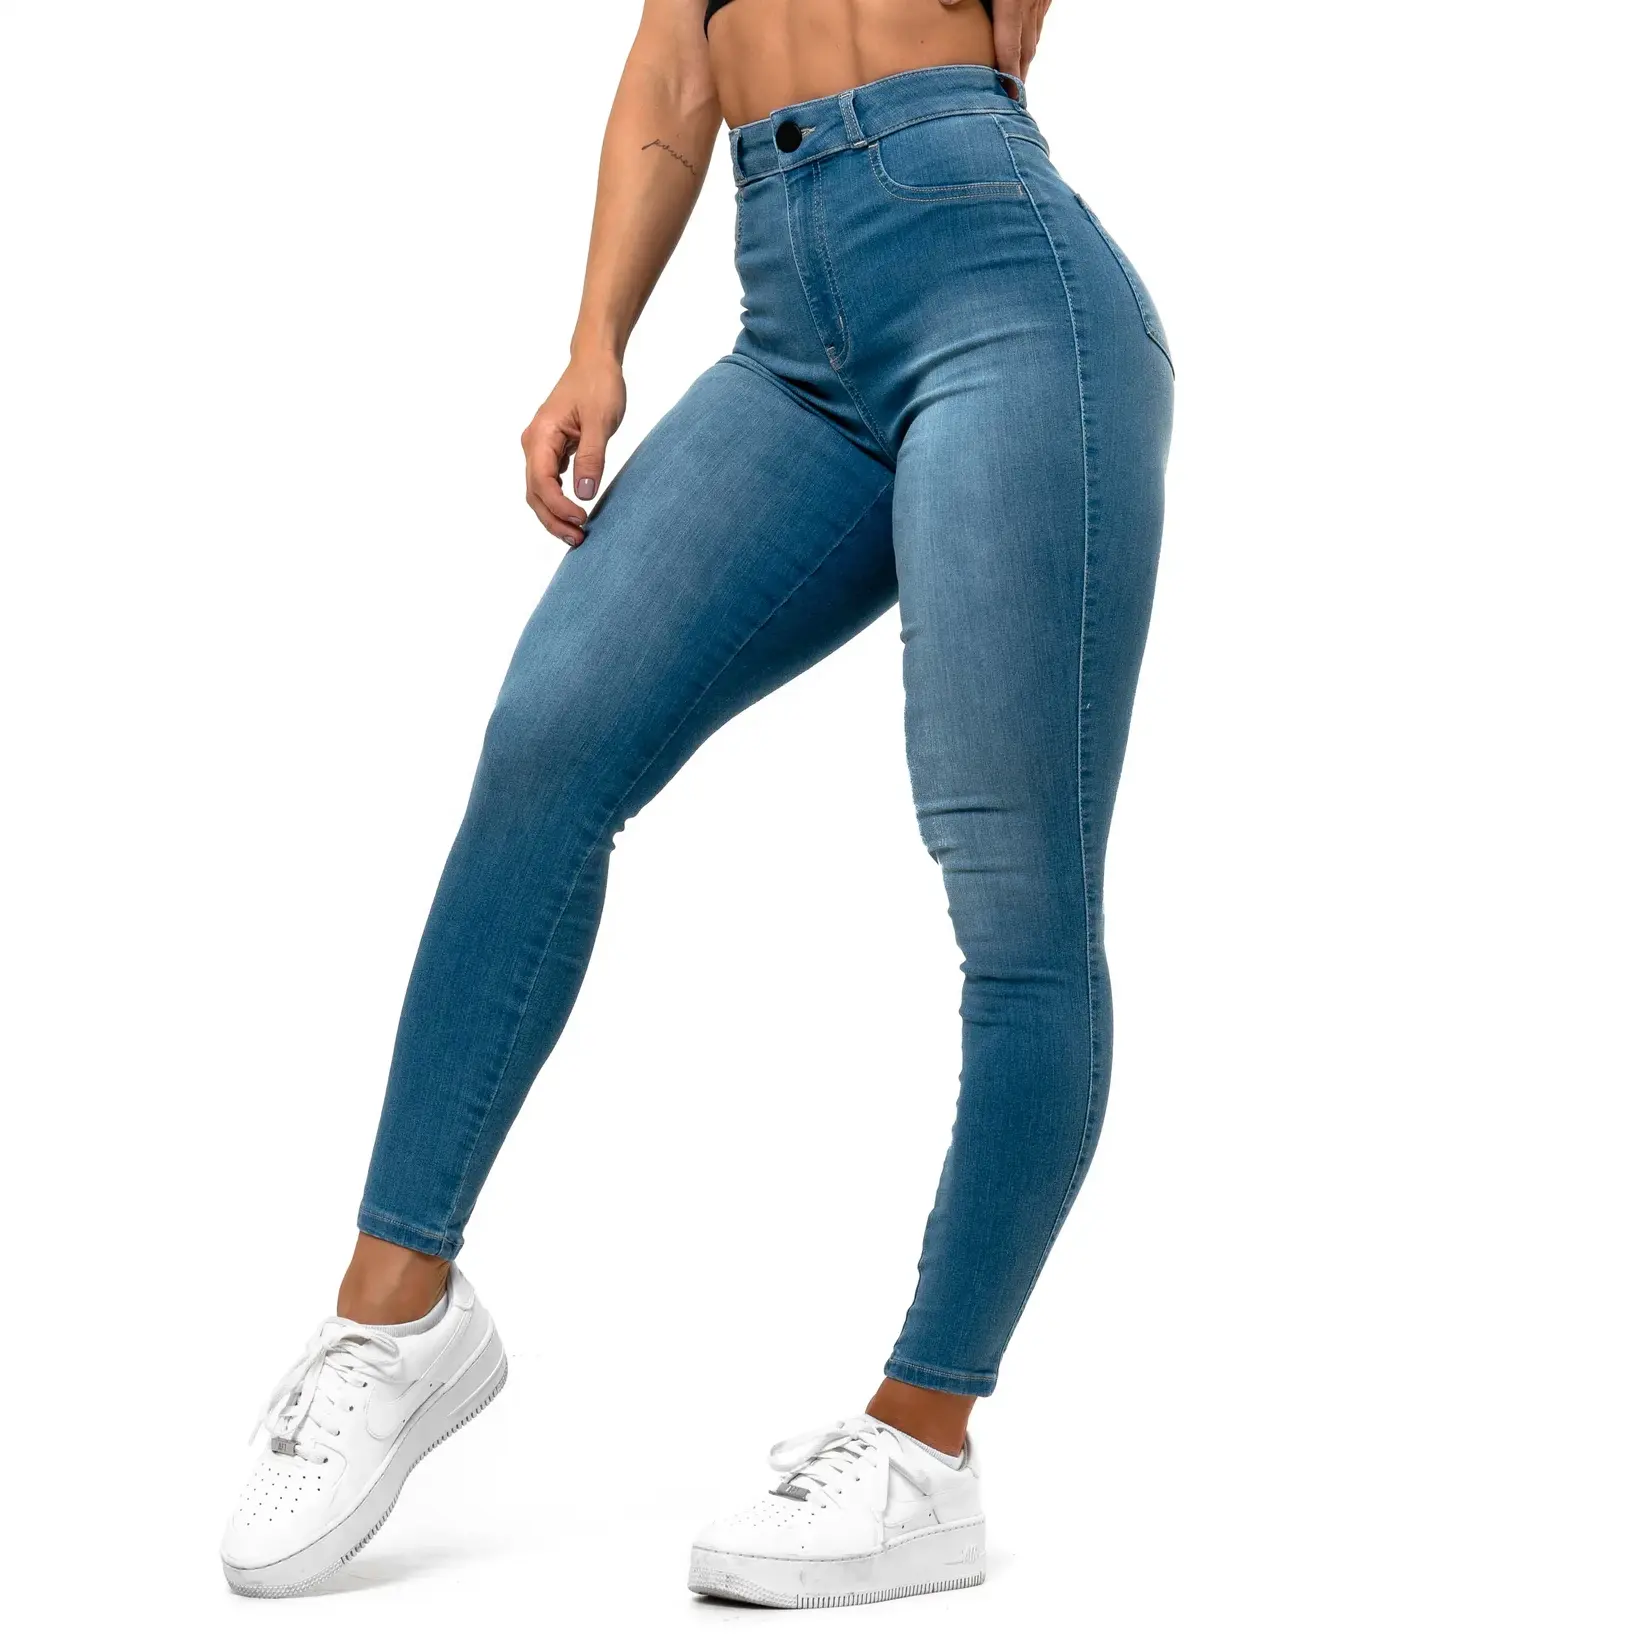 Benutzer definierte Logo Fashion Style Damen Hohe Taille Hellblaue Jeans Stretch Stoff Denim Bleistift hose Enge Jeans